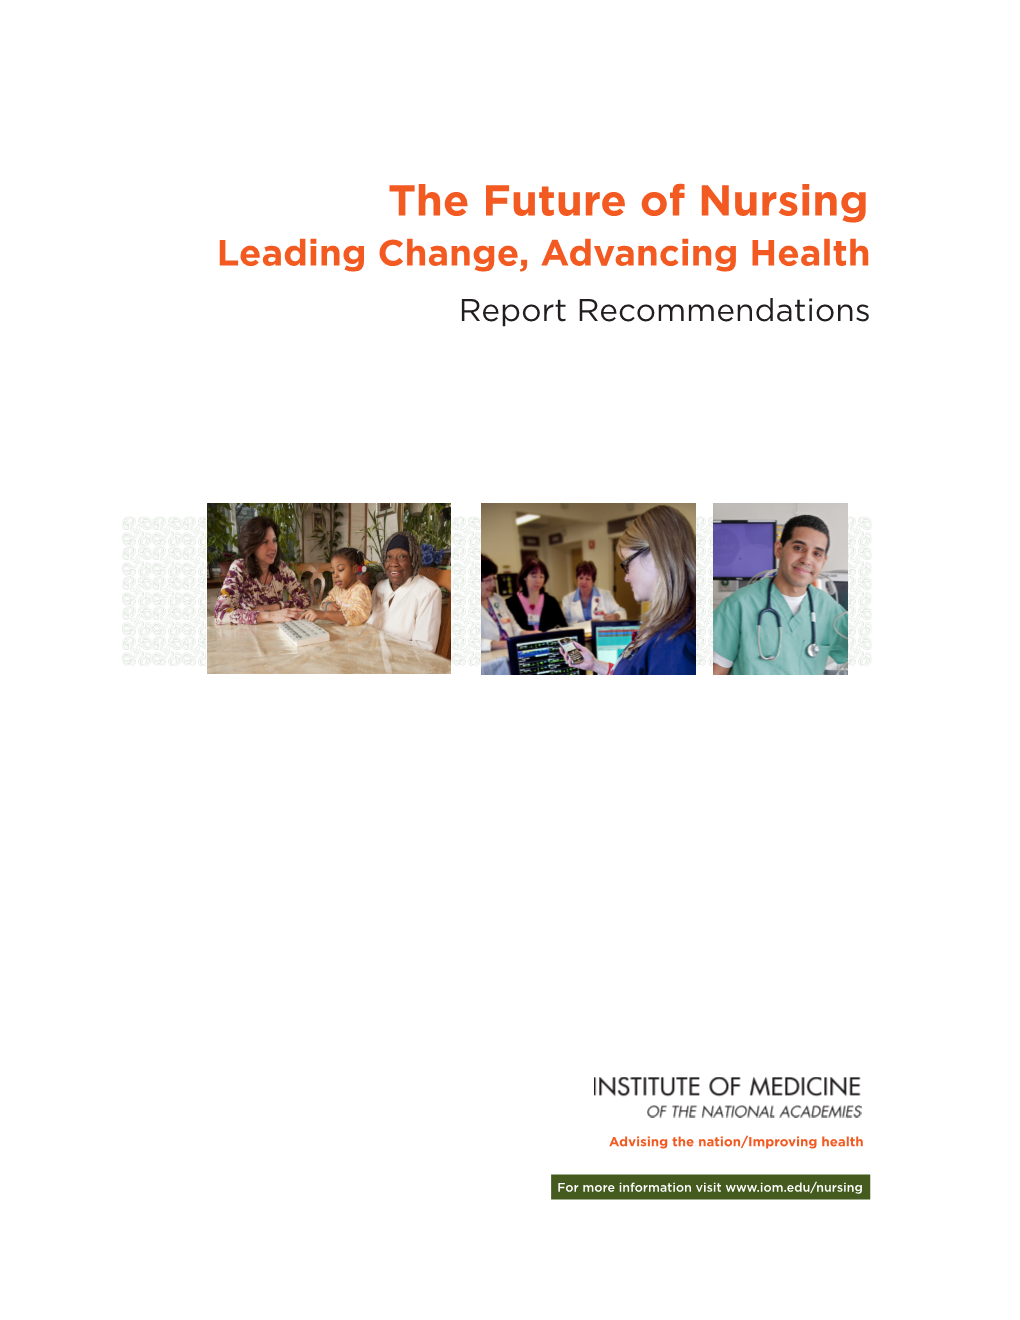 Institute of Medicine the Future of Nursing